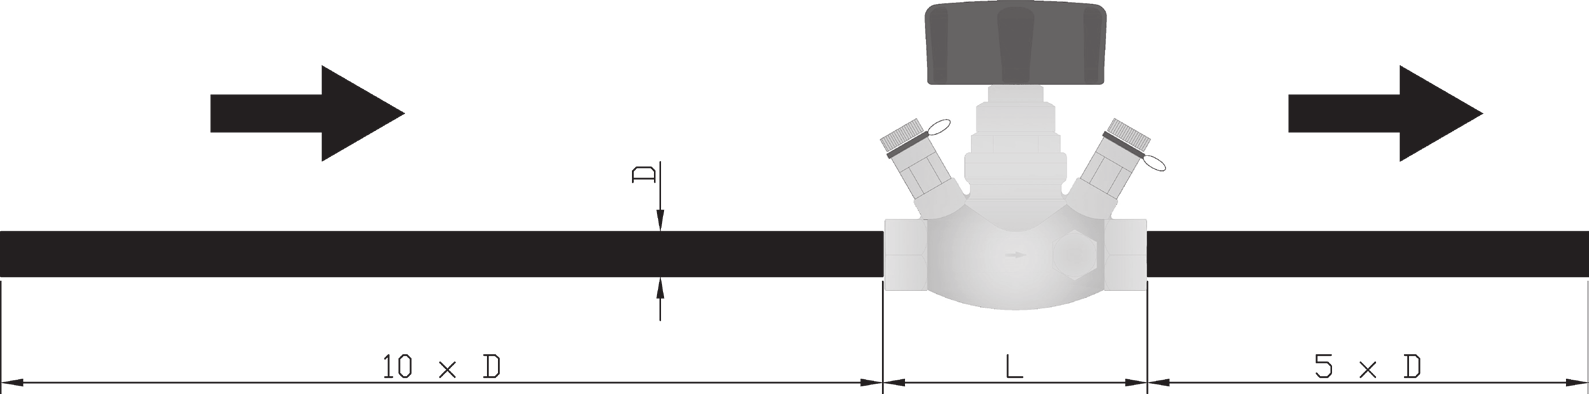 HERZ-Stoupačkový regulační ventil 7 GM-GR Příslušenství 7 0 Plomba přednastavení 7 0 Označovač přednastavení 0 00 Univerzální klíč HERZ 8900 0 Měřící počítač HERZ s rozhraním pro tiskárnu Náhradní